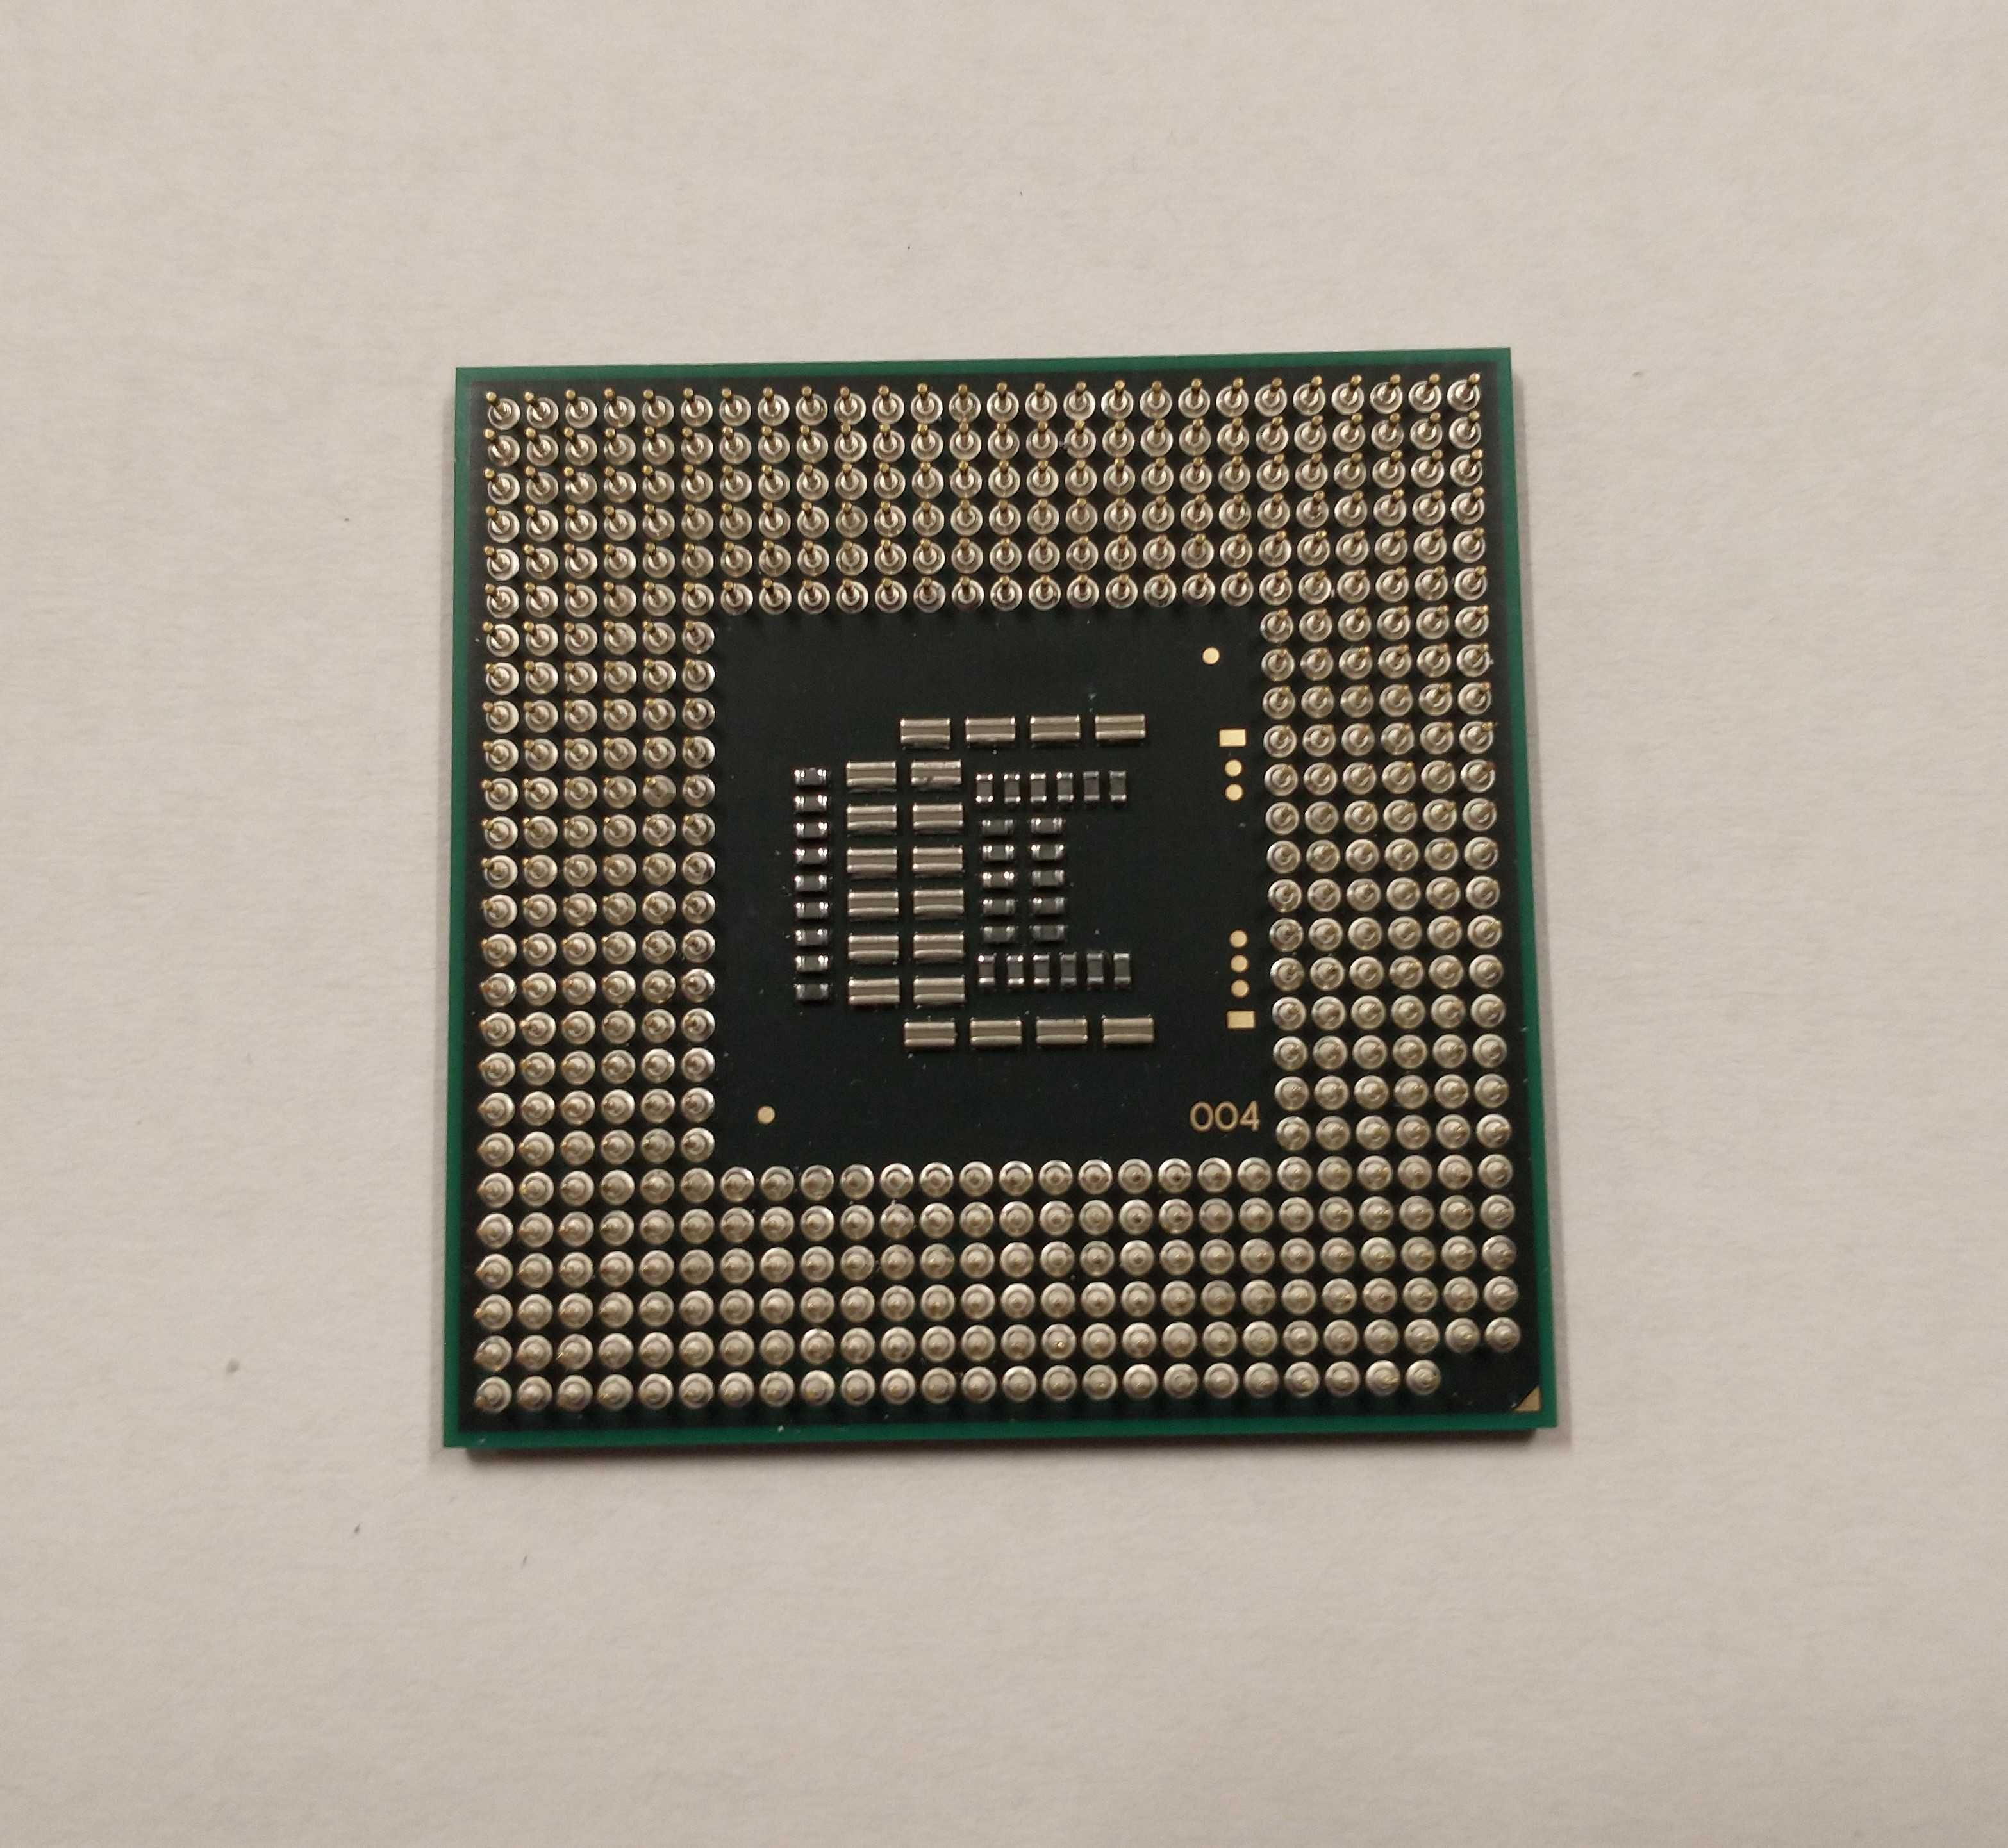 Procesor Intel Celeron Dual Core T3300